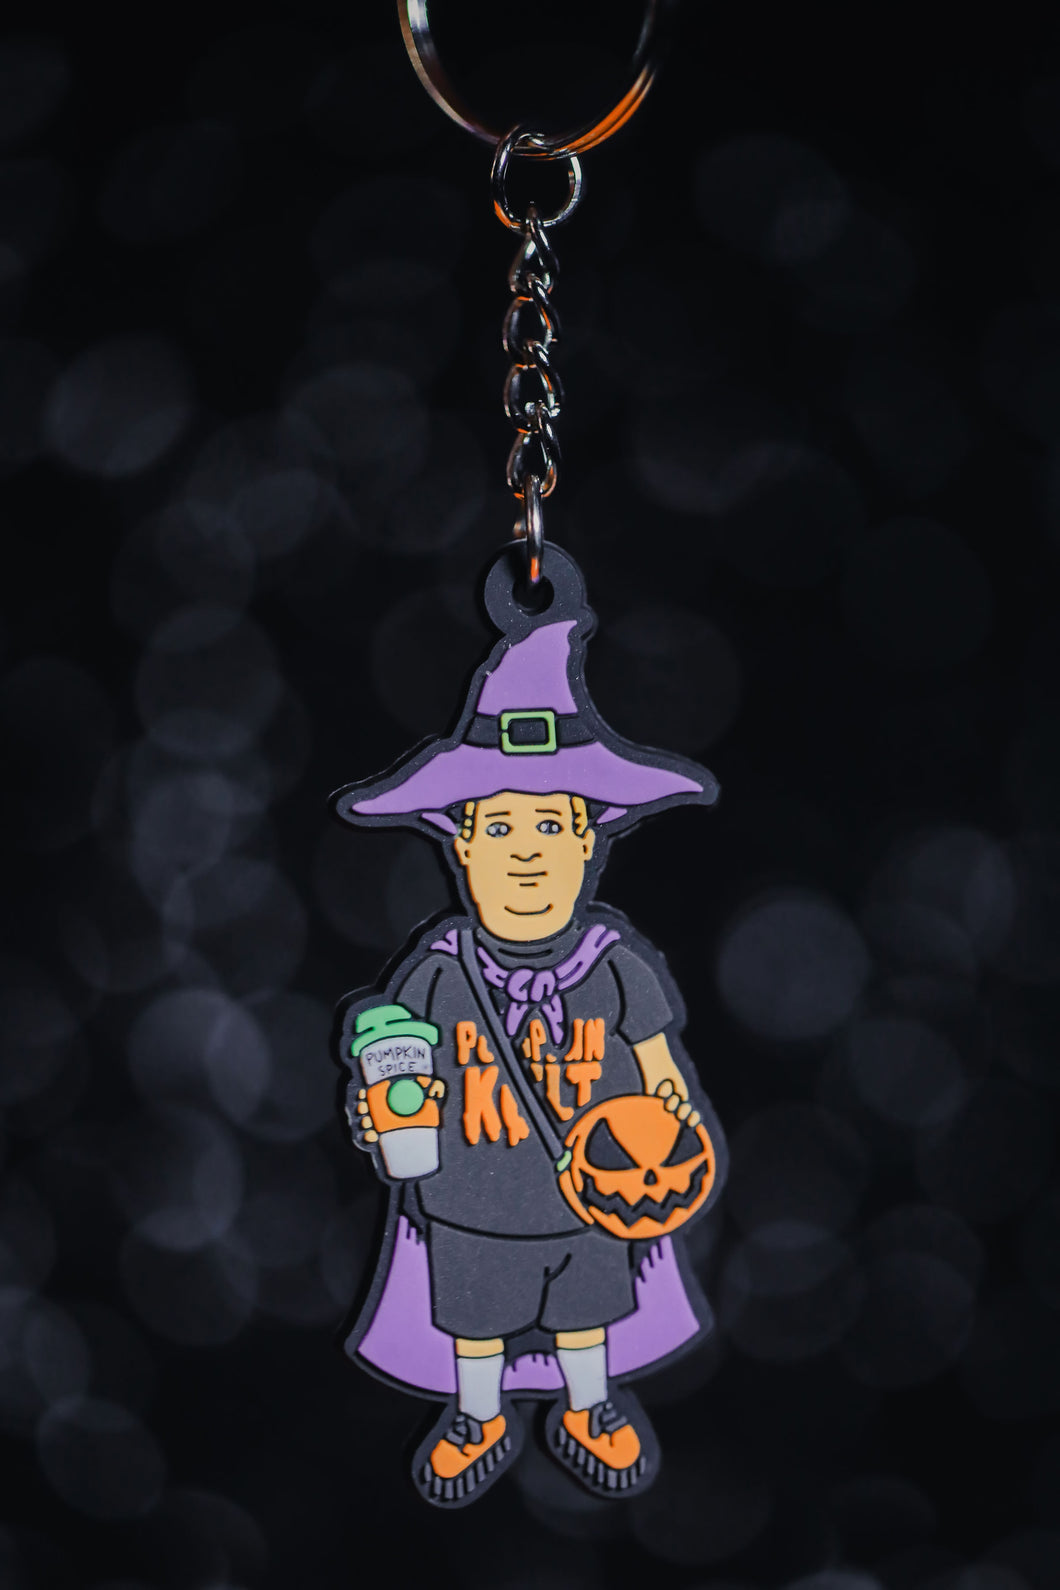 Basic Witch kid keychain with 